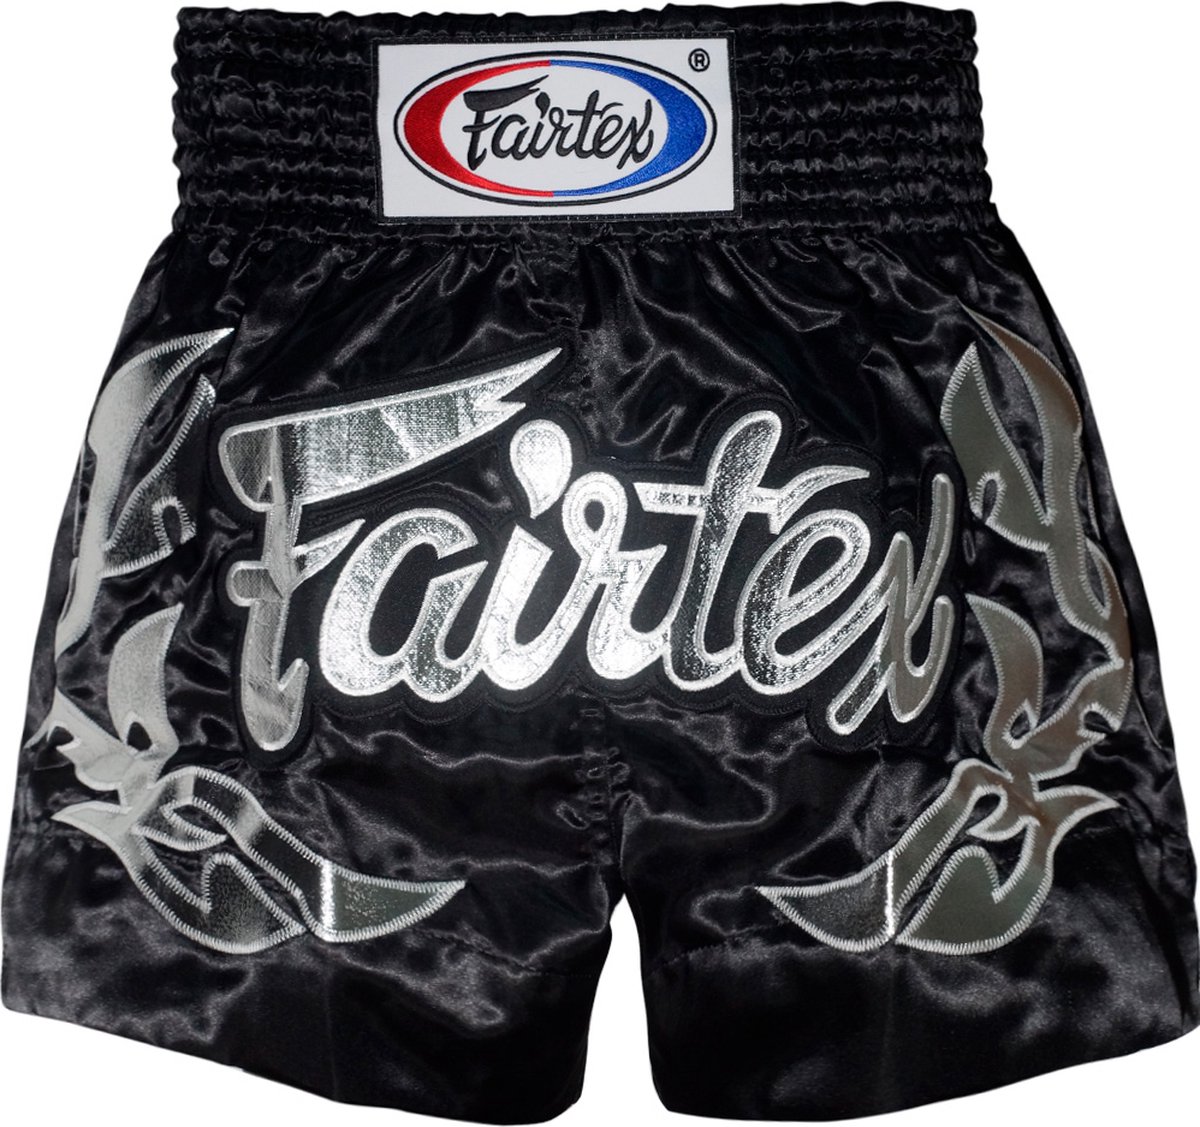 Fairtex Muay Thai Shorts - Eternal Silver - zwart/zilver - maat L